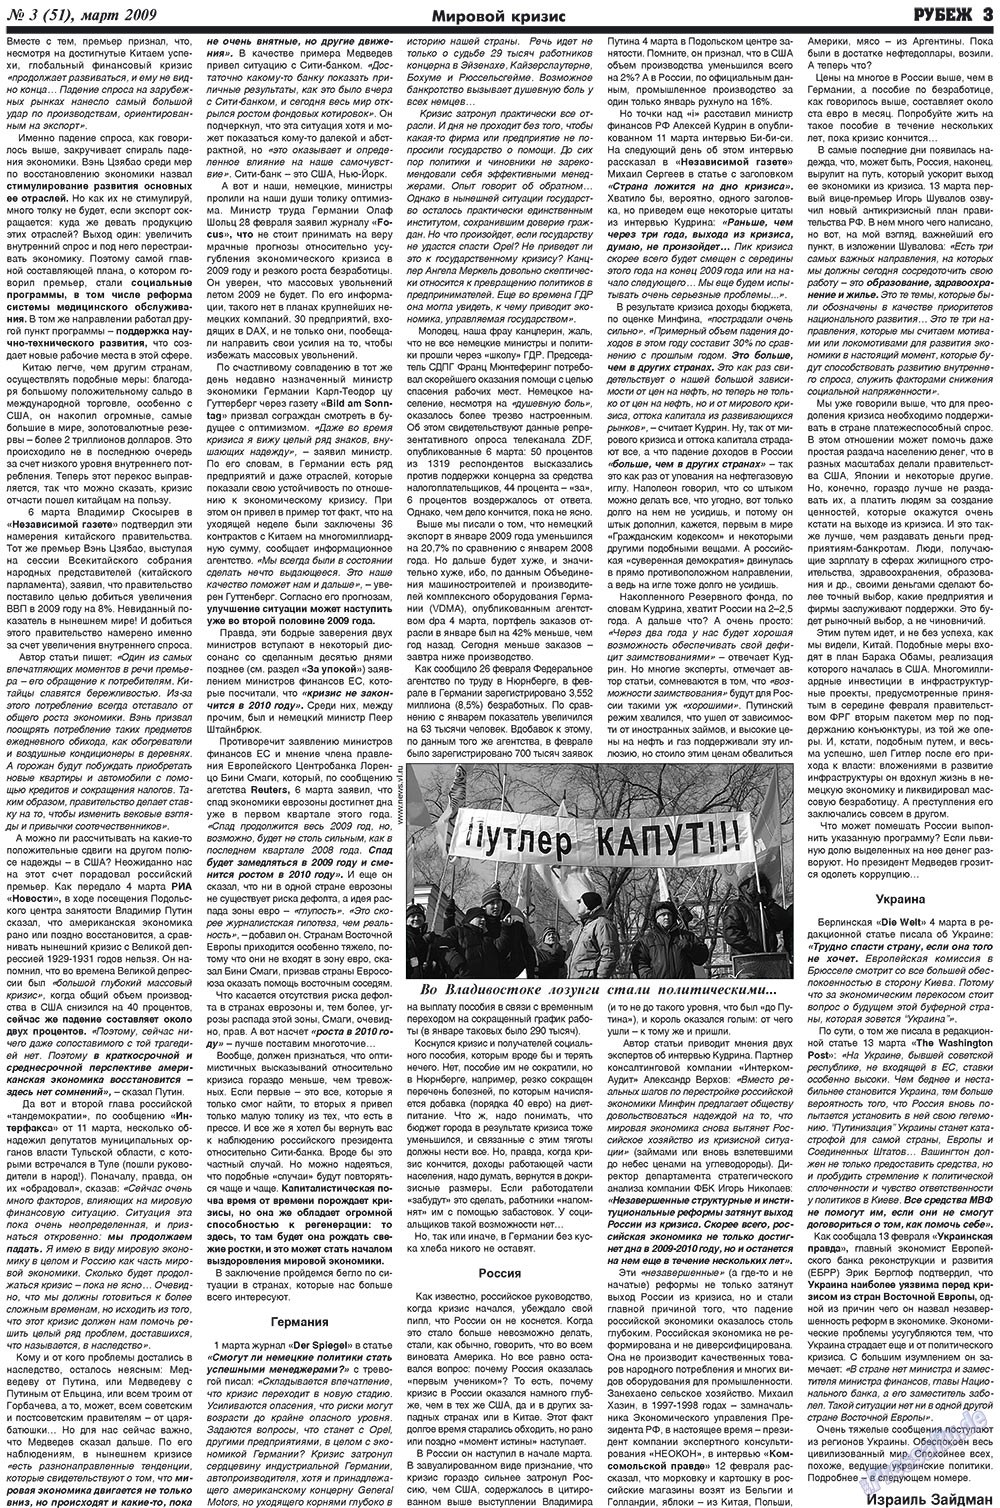 Рубеж (газета). 2009 год, номер 3, стр. 3